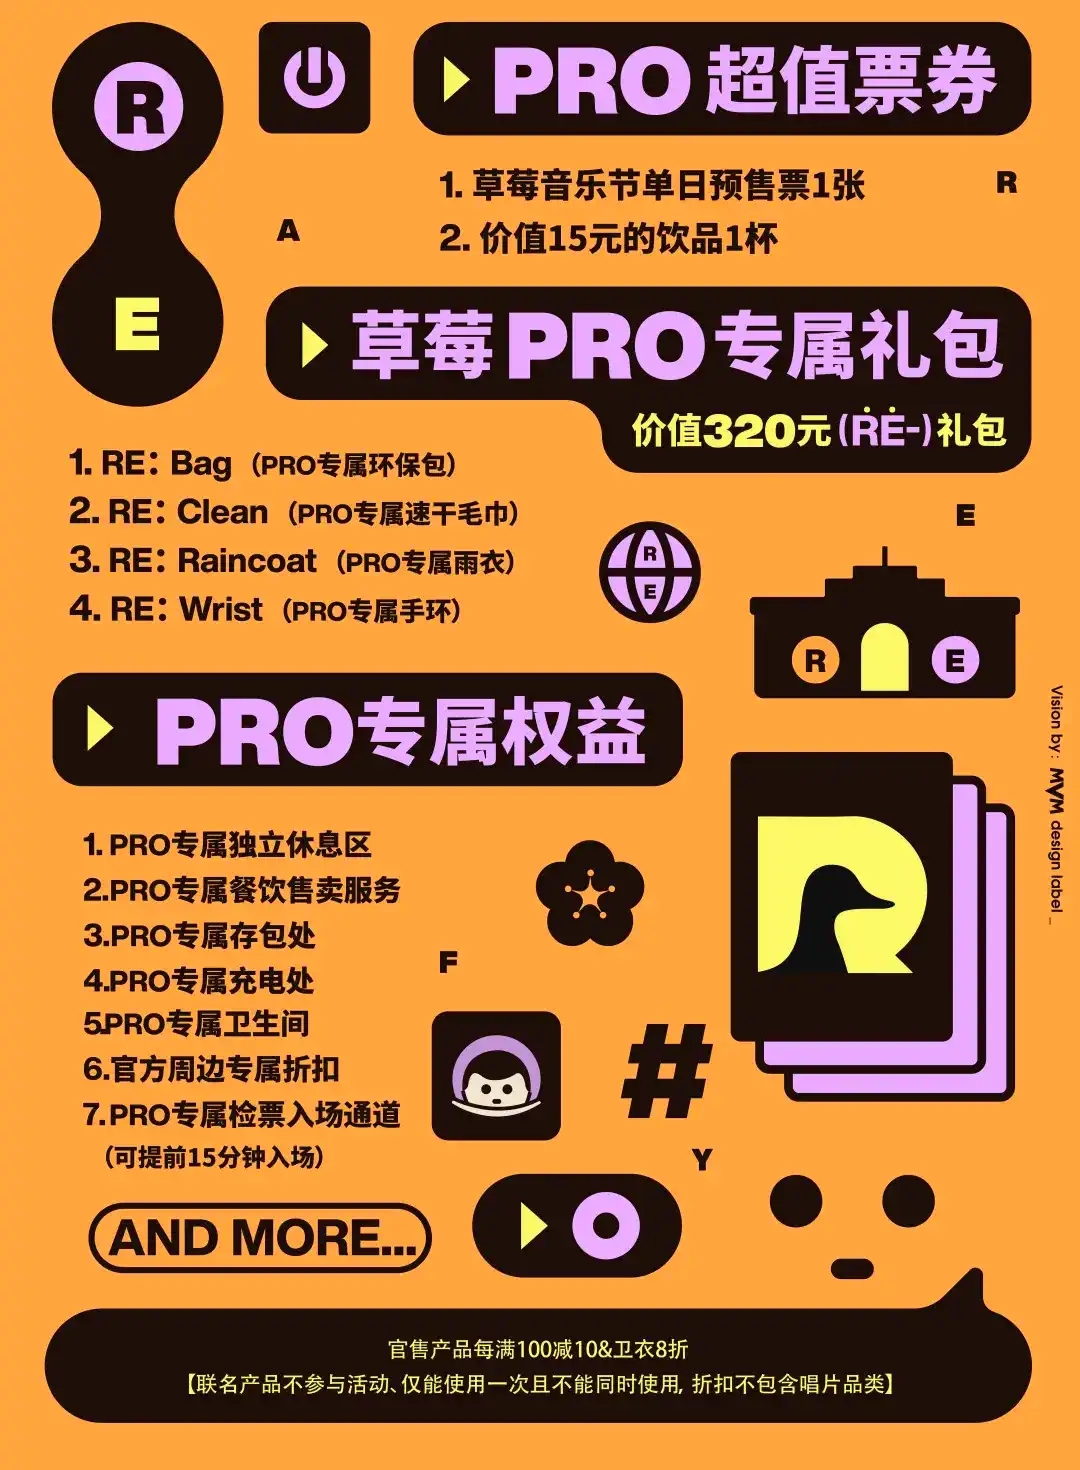 2021南京草莓音乐节